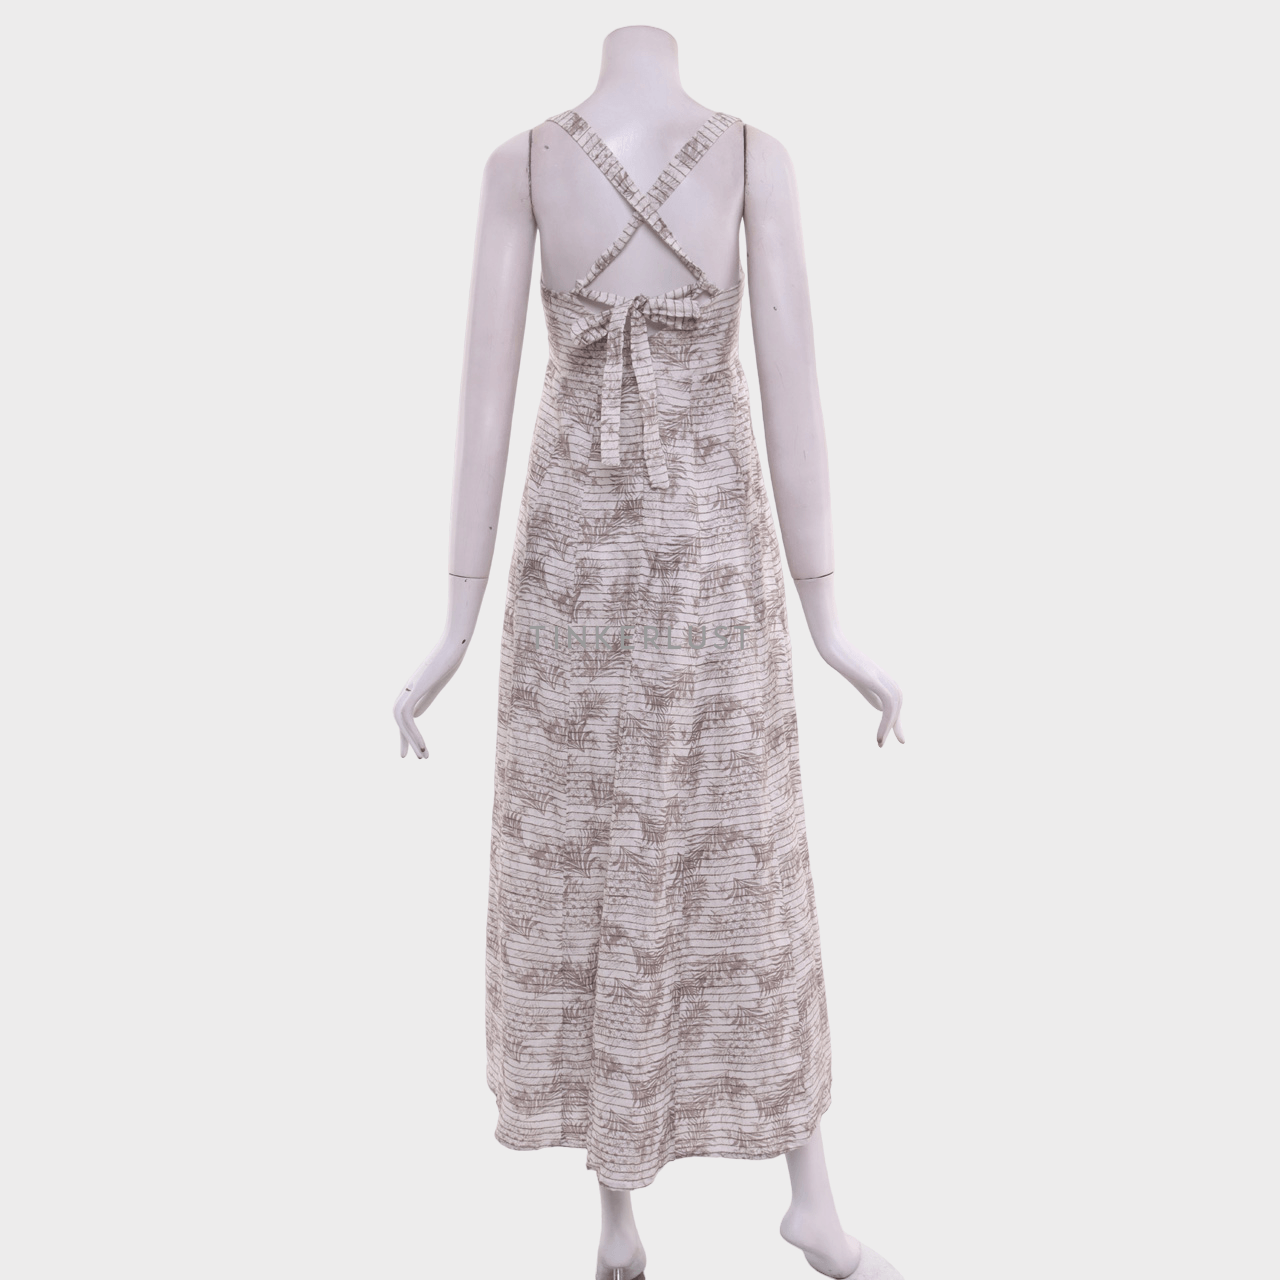 Private Collection White & Taupe Midi Dress